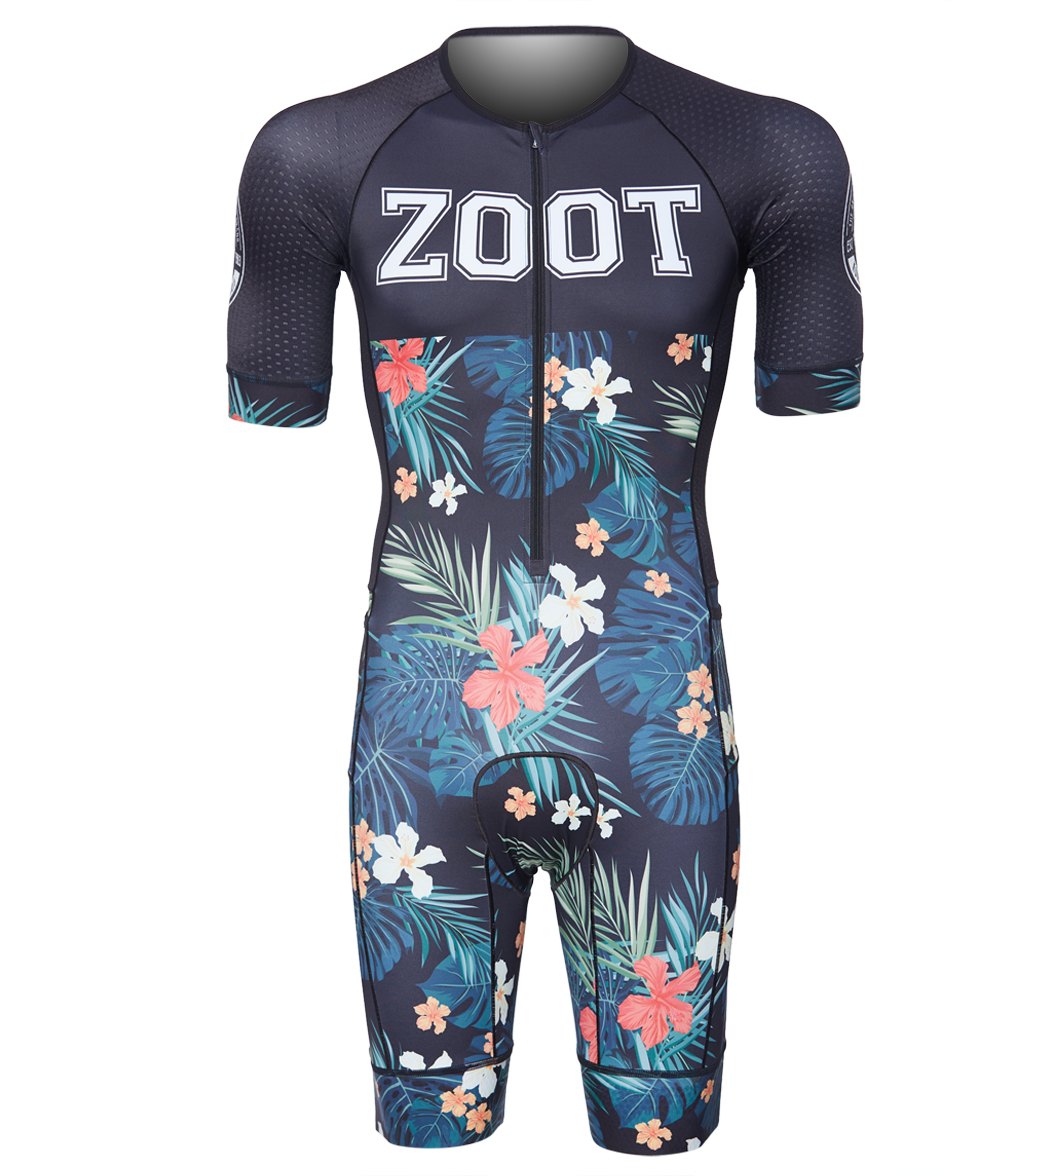 Zoot Men's Ltd Tri Aero Short Sleeve Shirt Race Suit - 83 19 Small - Swimoutlet.com